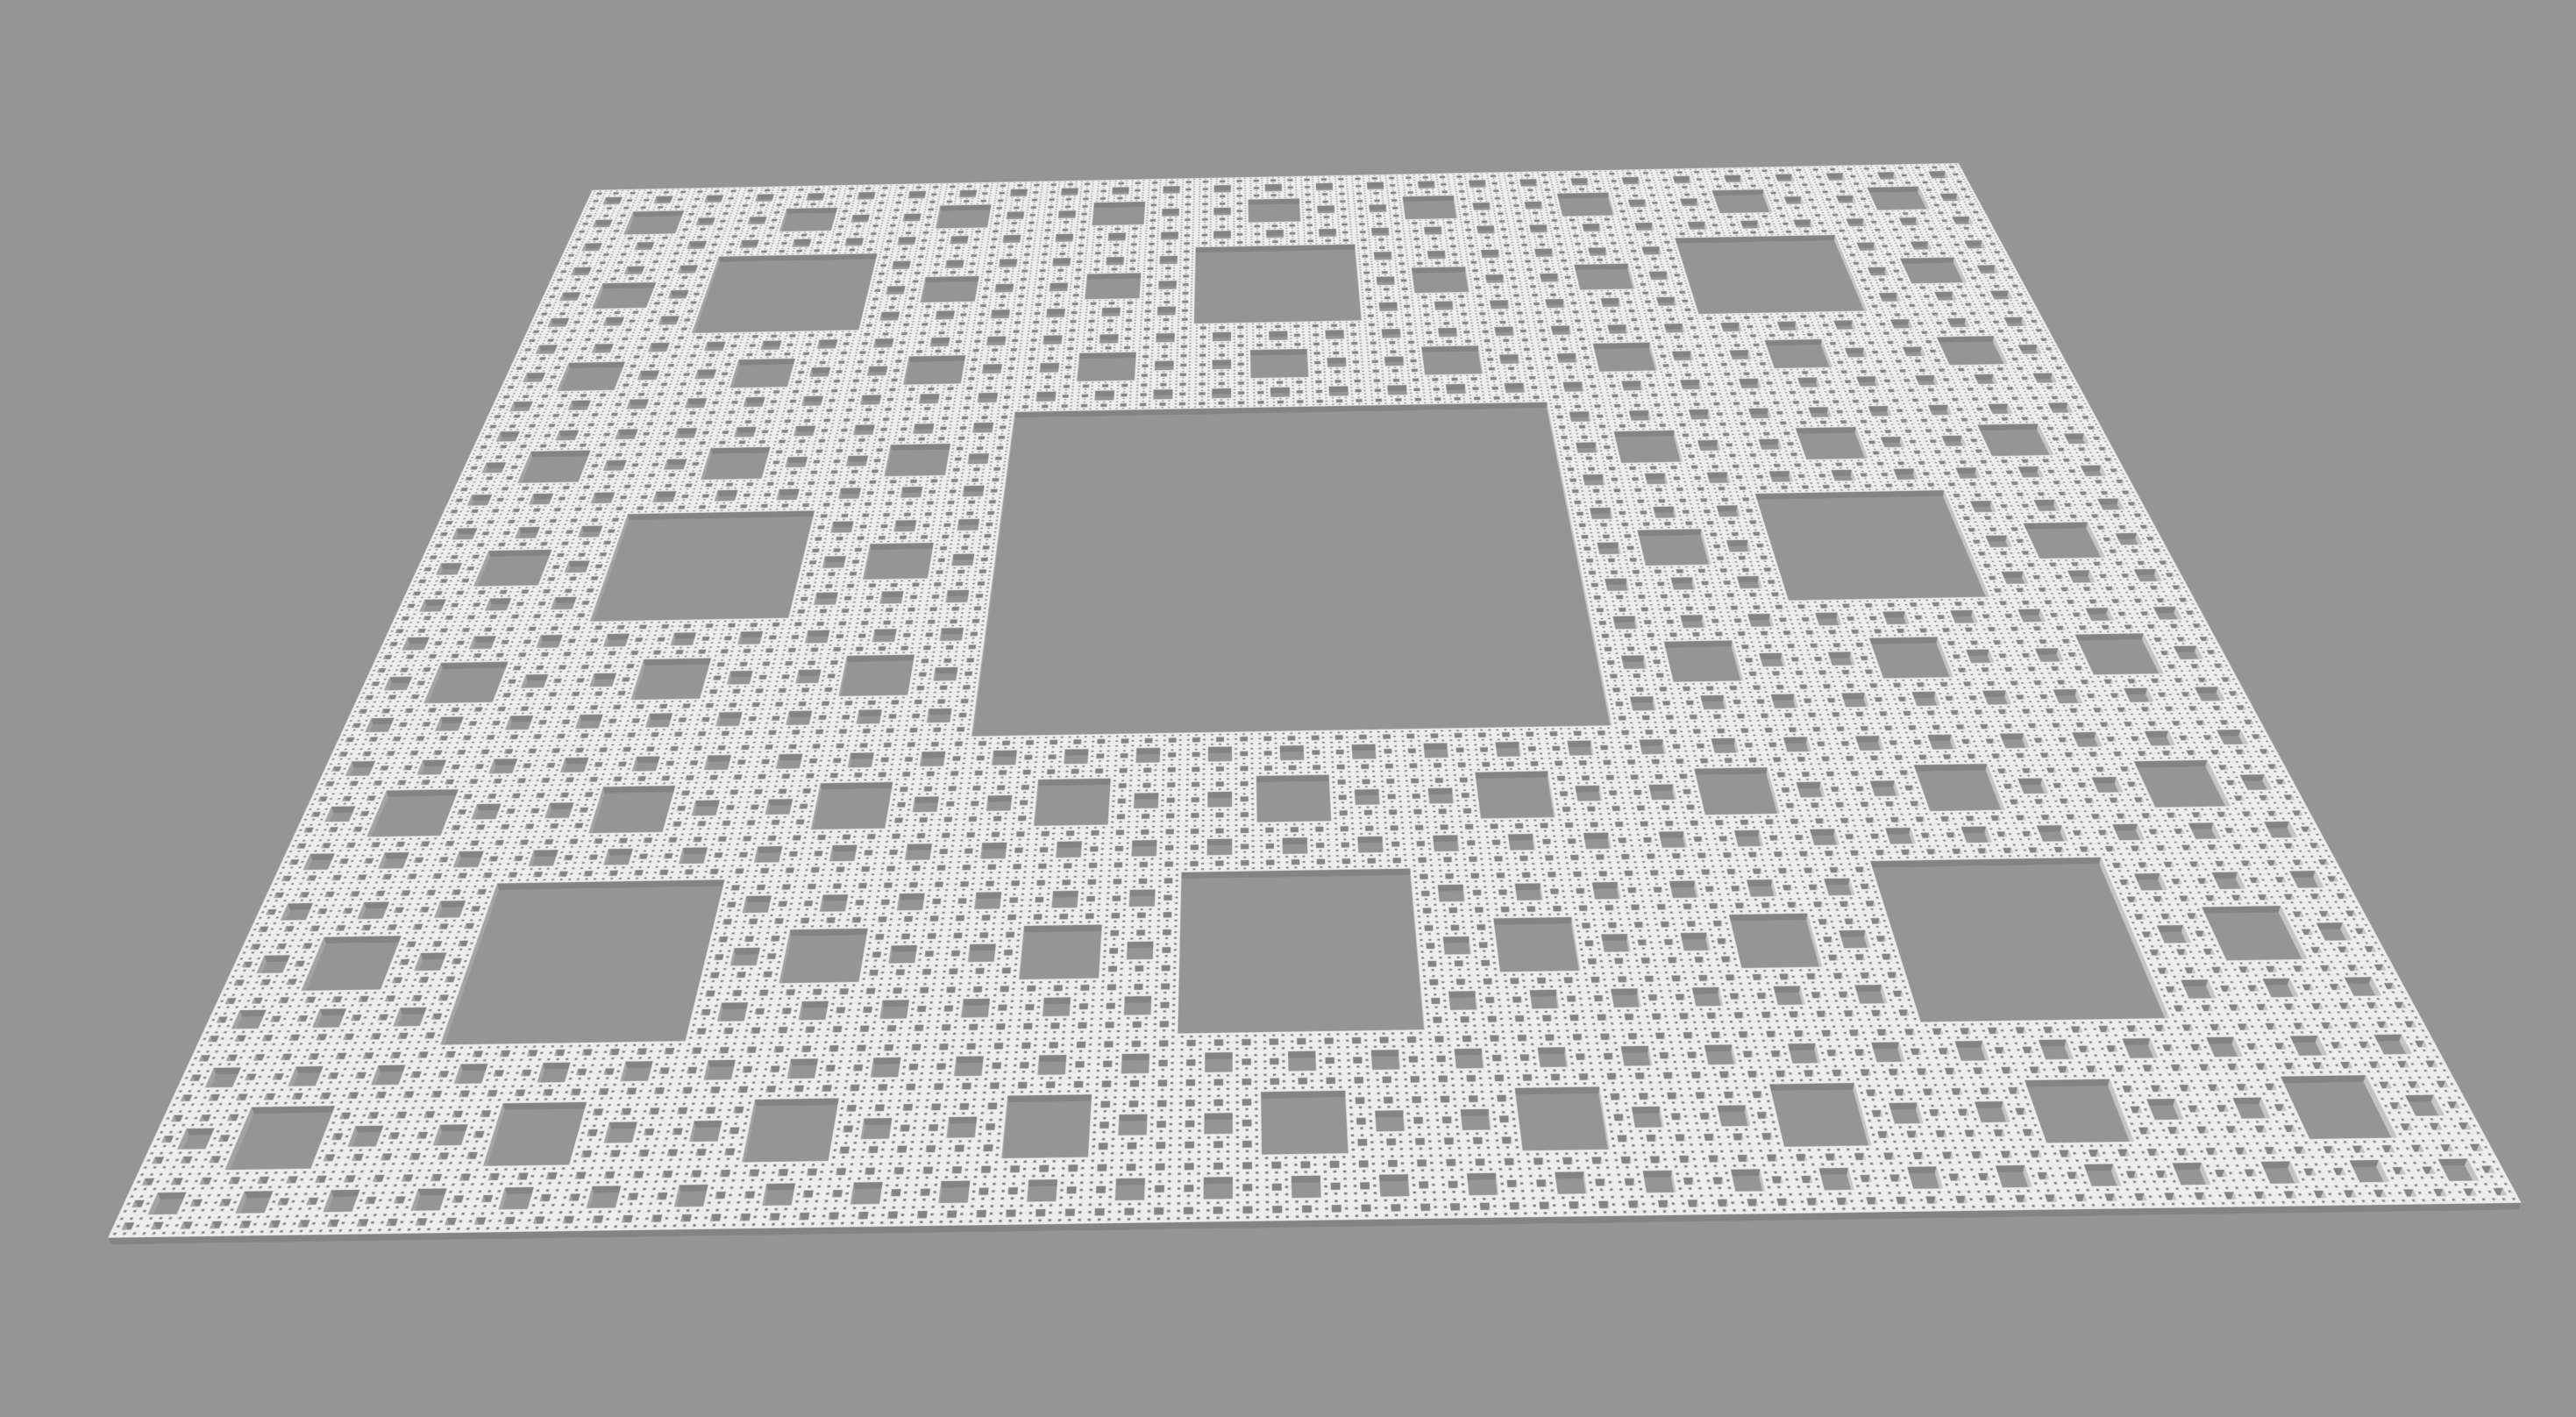 Sierpinski Carpet level 6 model